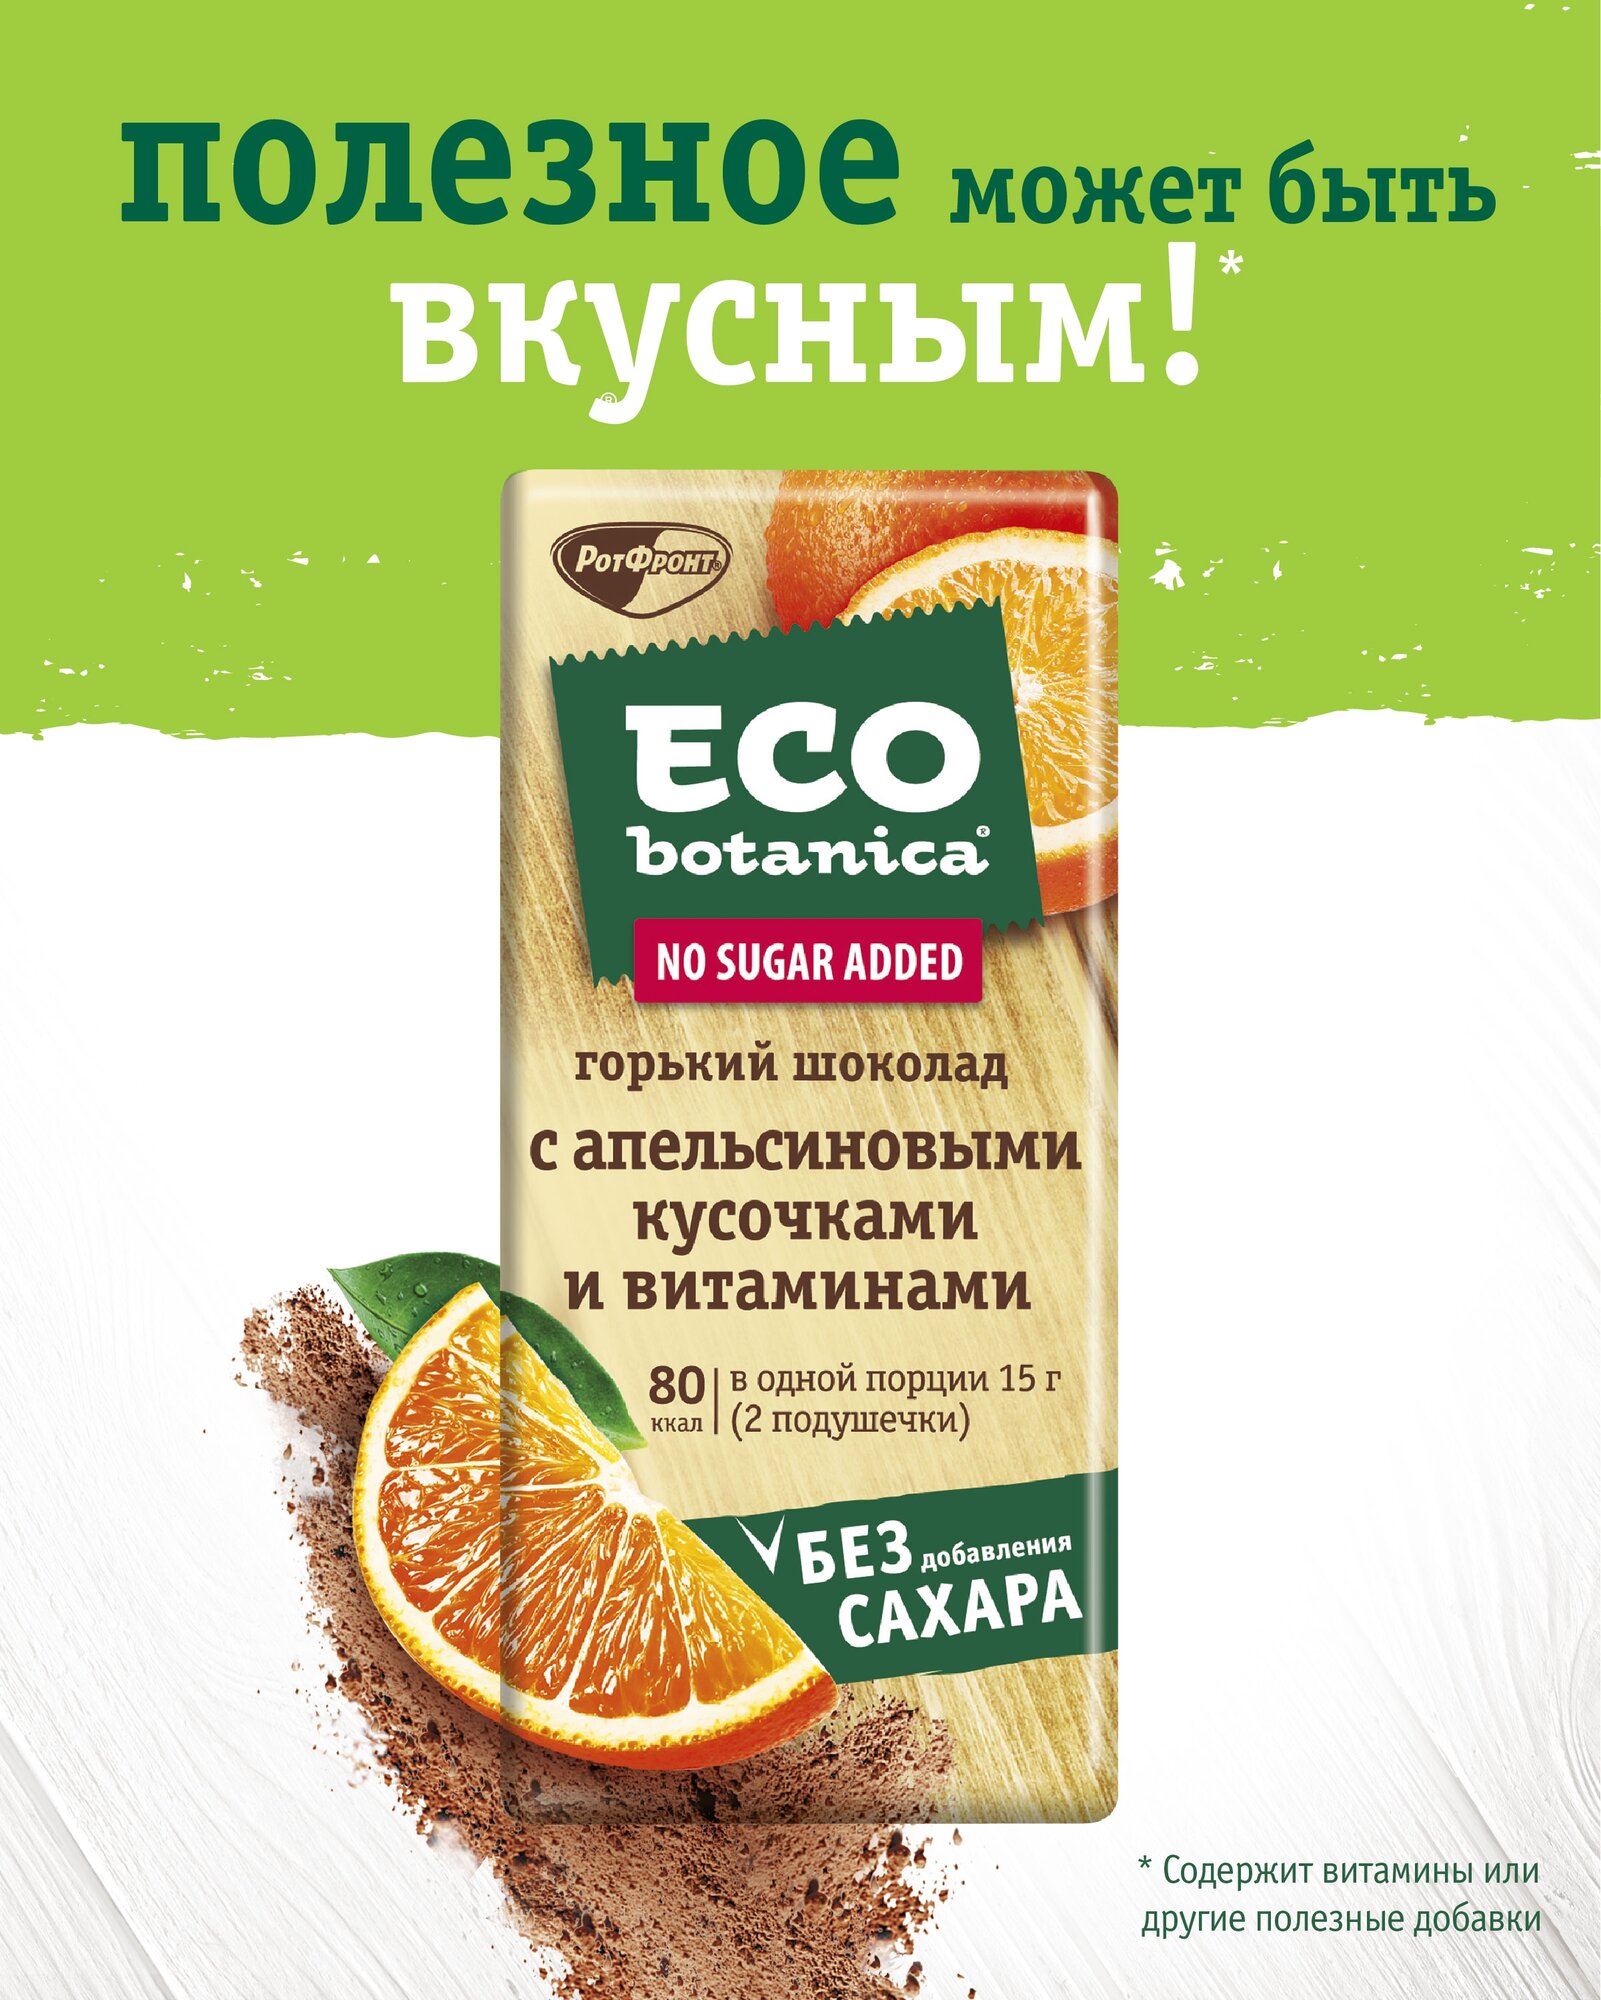 ШОКОЛАД_Eco_-_botanica_Горький_шок_с_апельсин_кусоч_и_витаминами_1/90г.